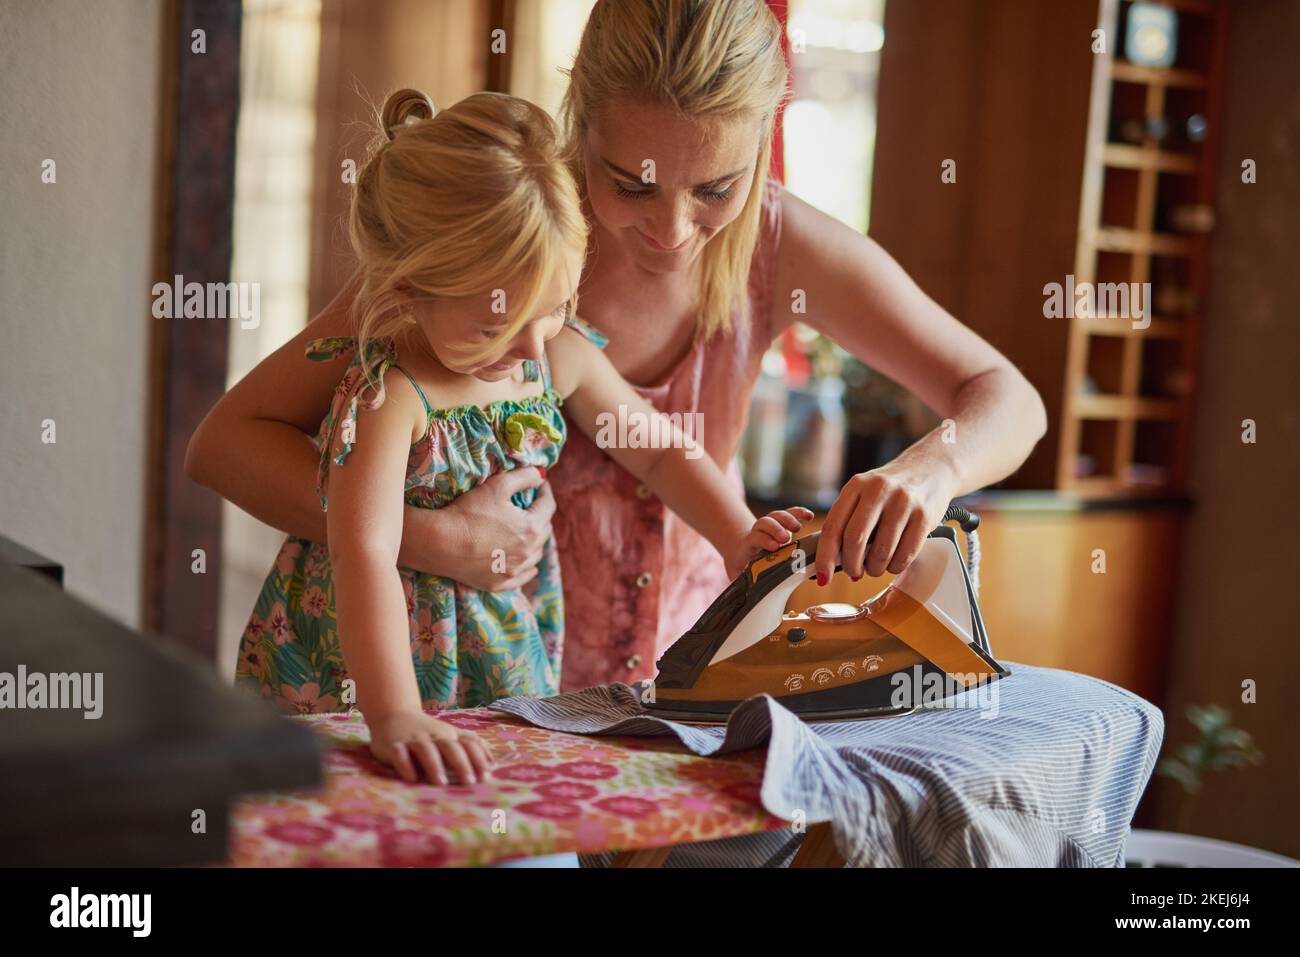 Ahora mira como los pliegues desaparecen como la magia. Una niña que ayuda a su madre a planchar algo de ropa. Foto de stock